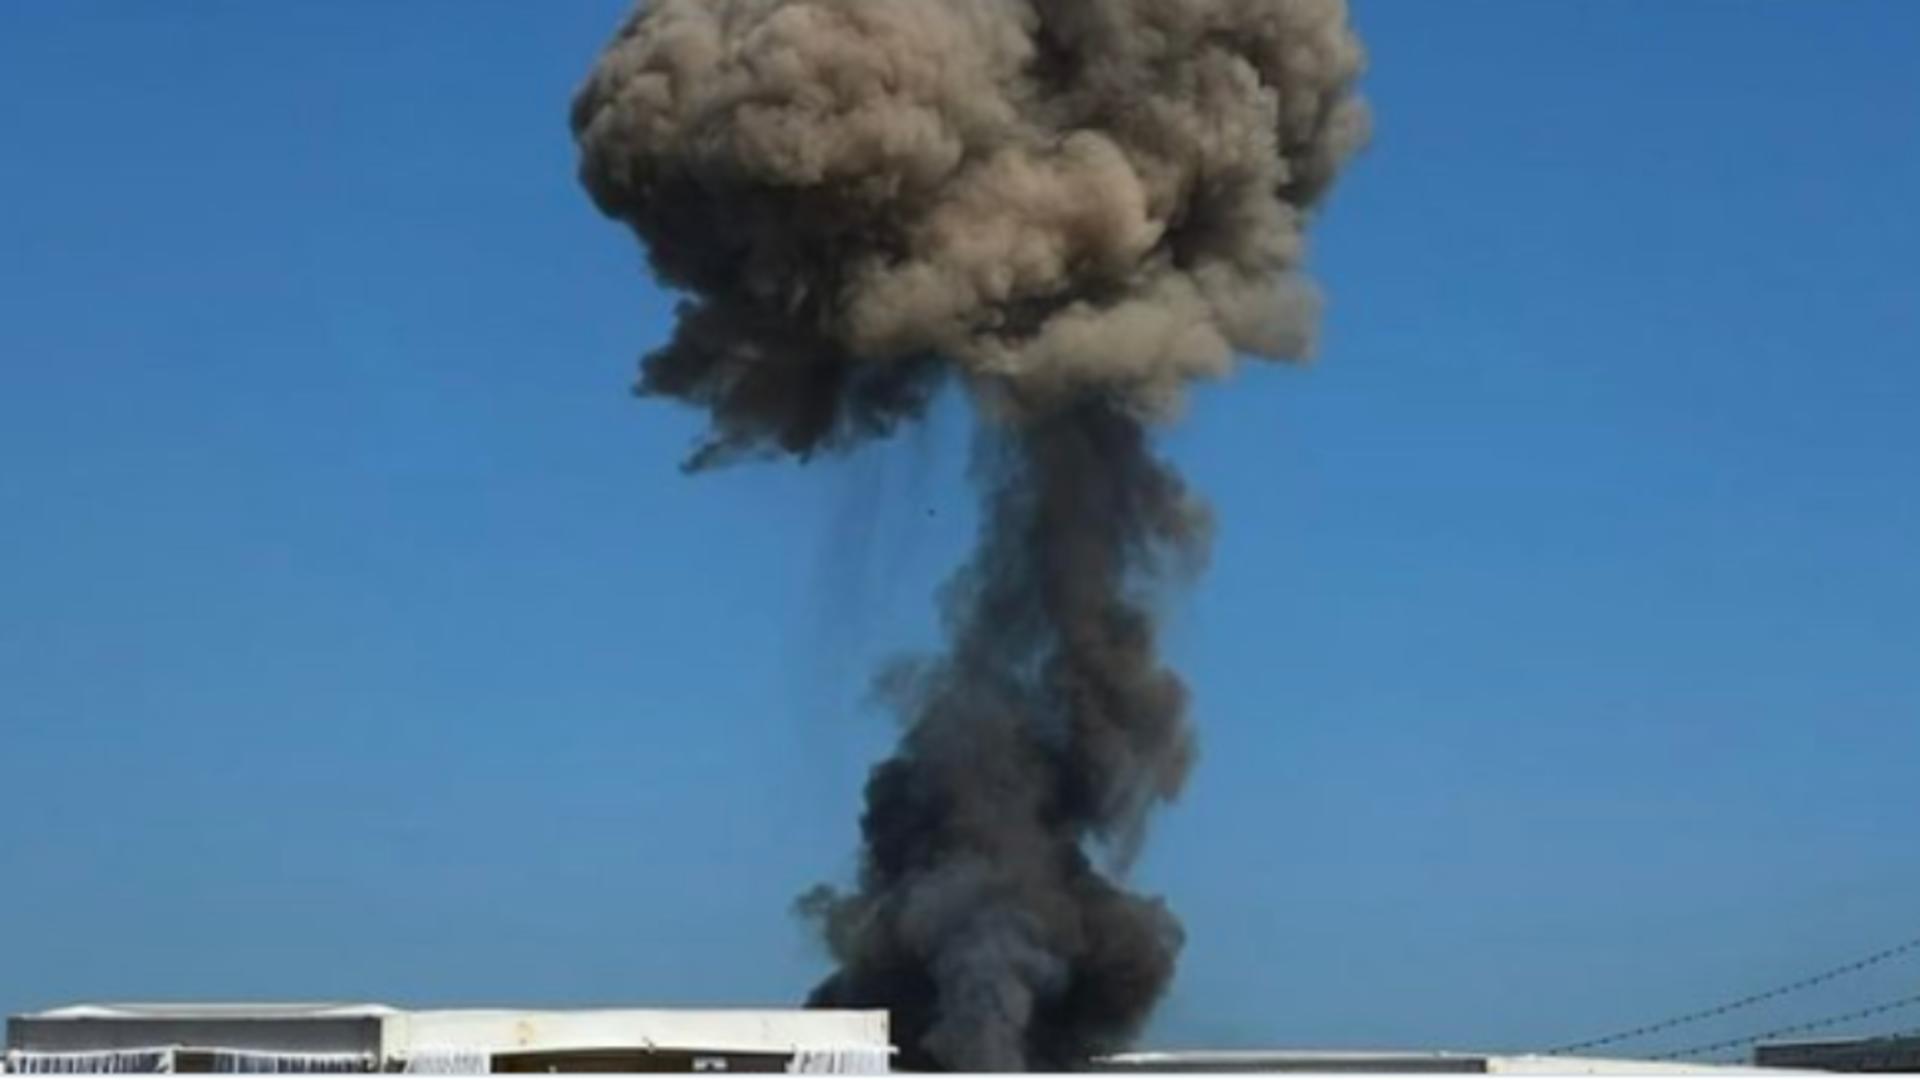 Haz de necaz despre exploziile din Crimeea: „Este foarte periculos să fumezi în locuri periculoase”